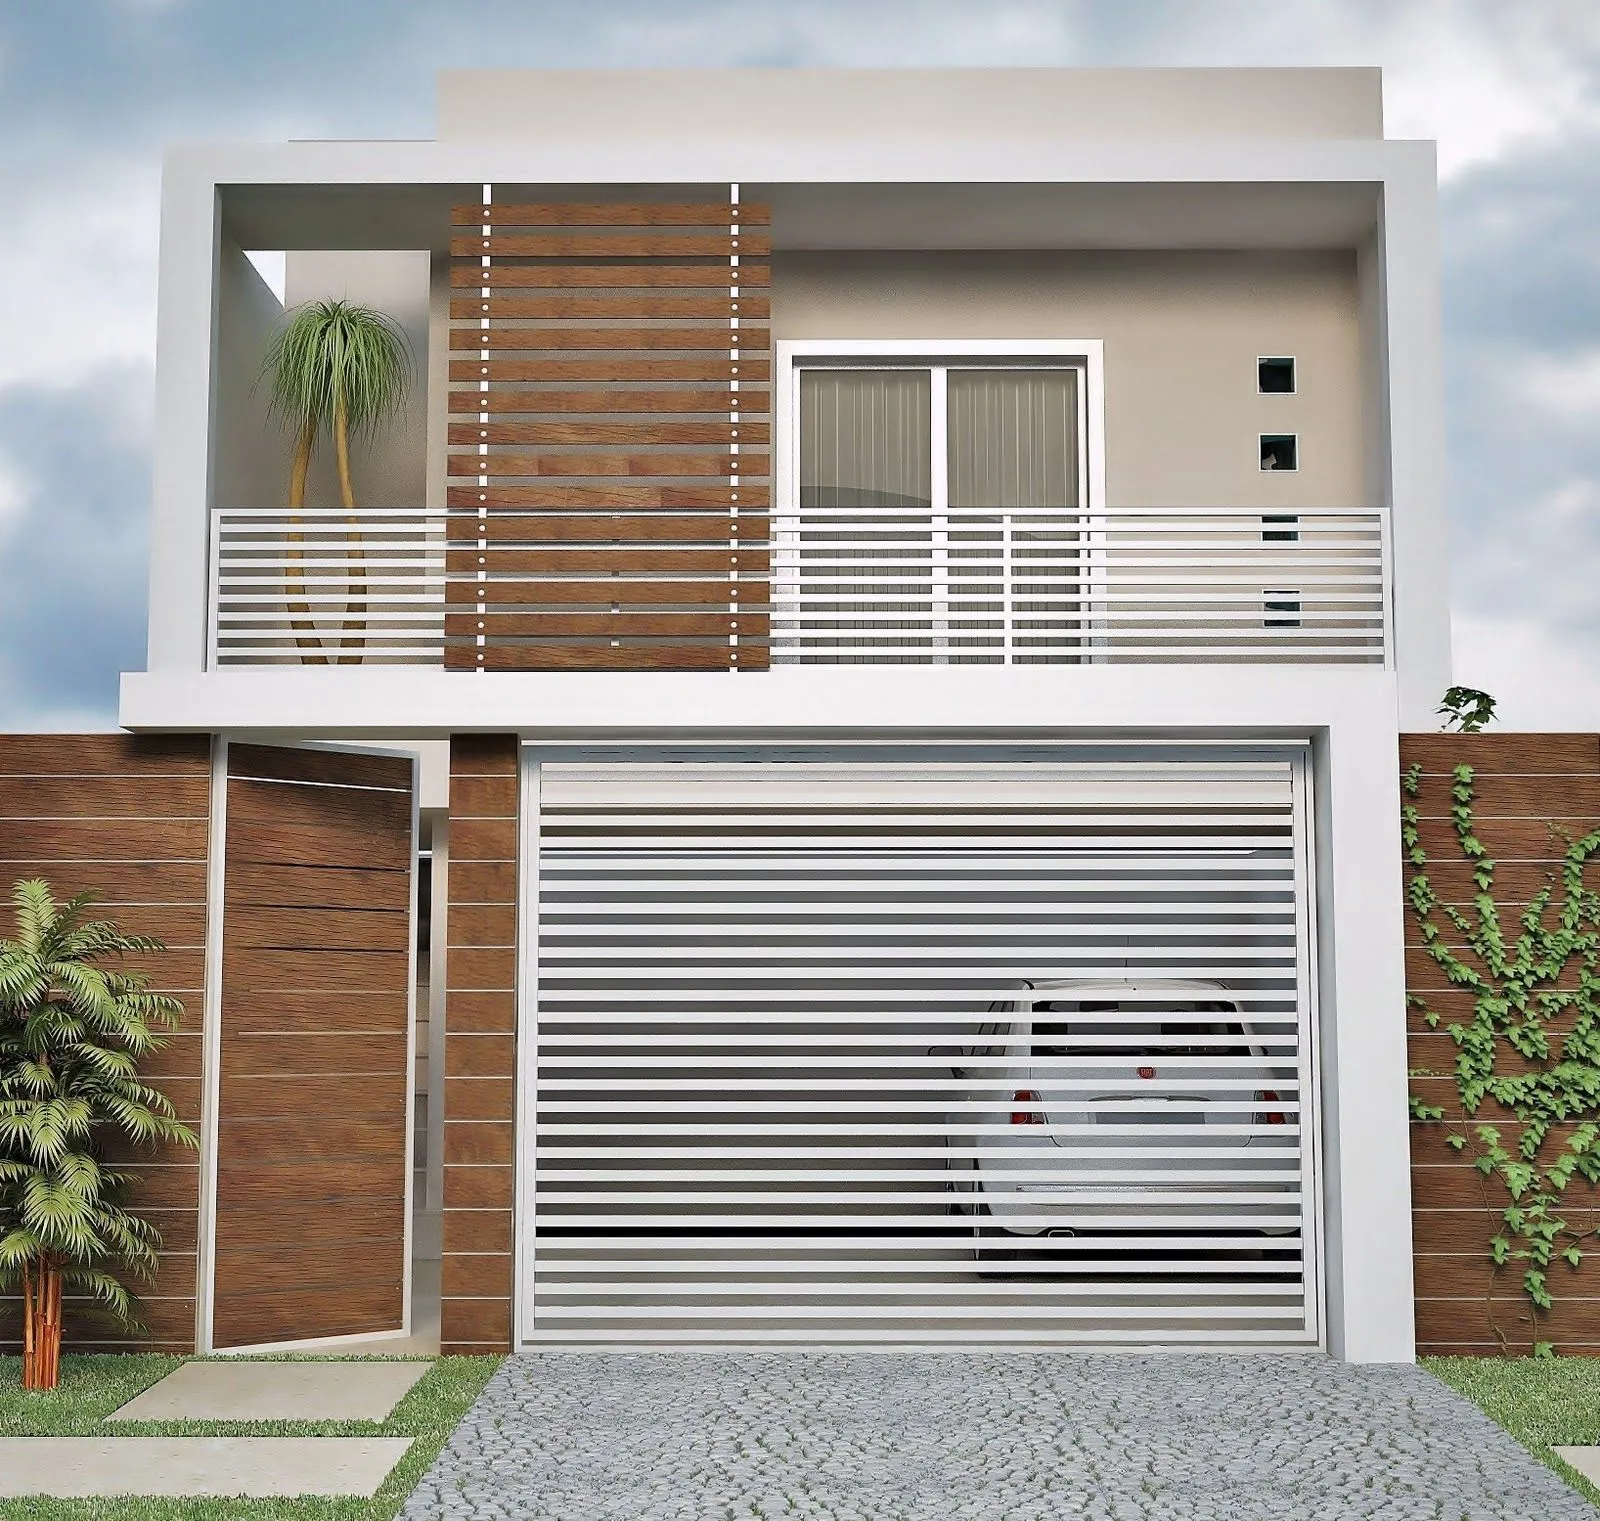 30 modelos incríveis de fachadas de casas pequenas e modernas